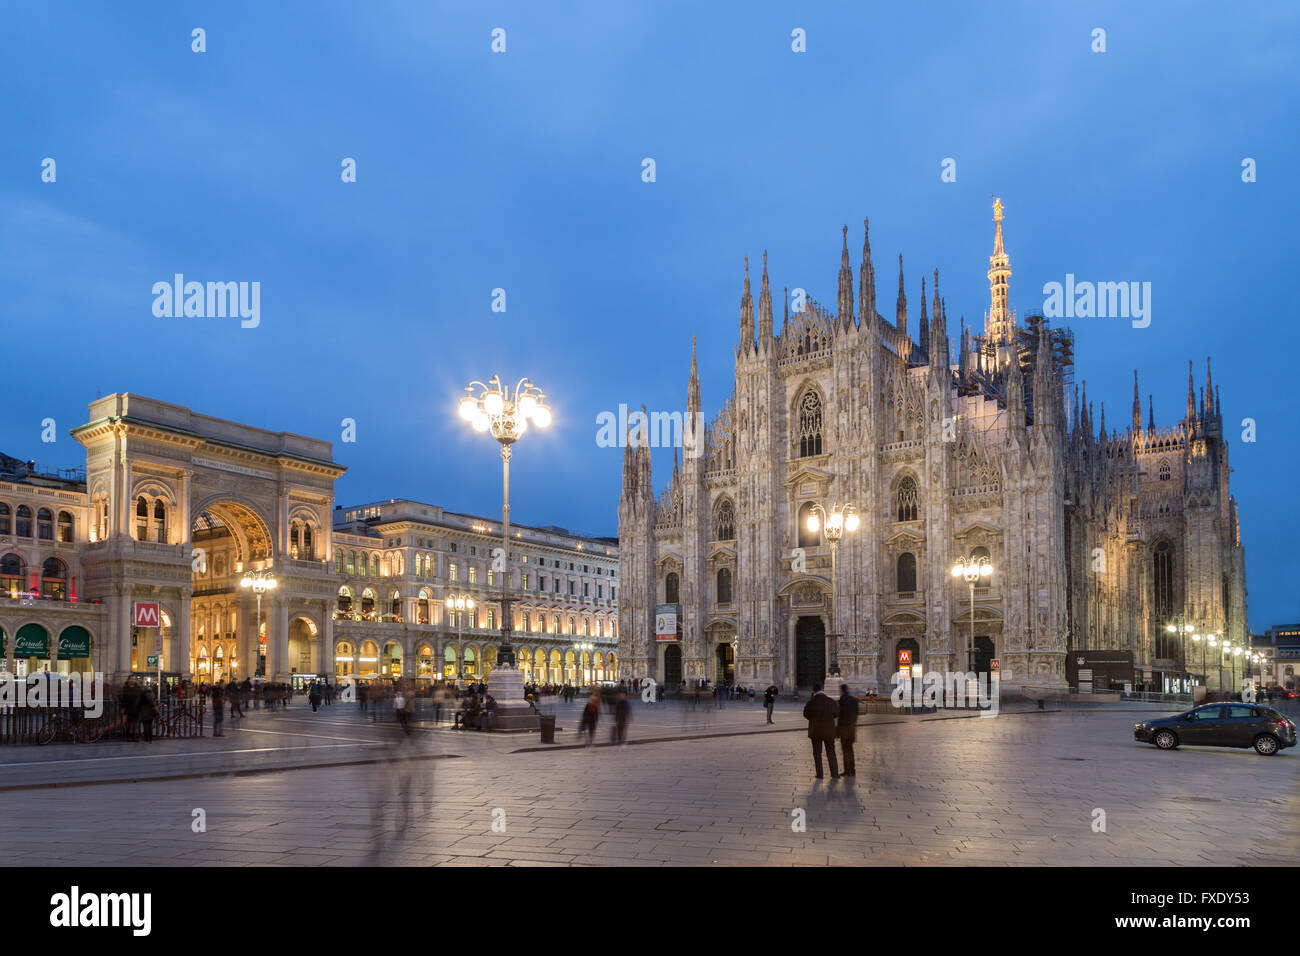 Galerie Vittorio Emanuele II et la cathédrale de Milan, la place de la cathédrale ou de la Piazza del Duomo à duskMilan, Italie Banque D'Images